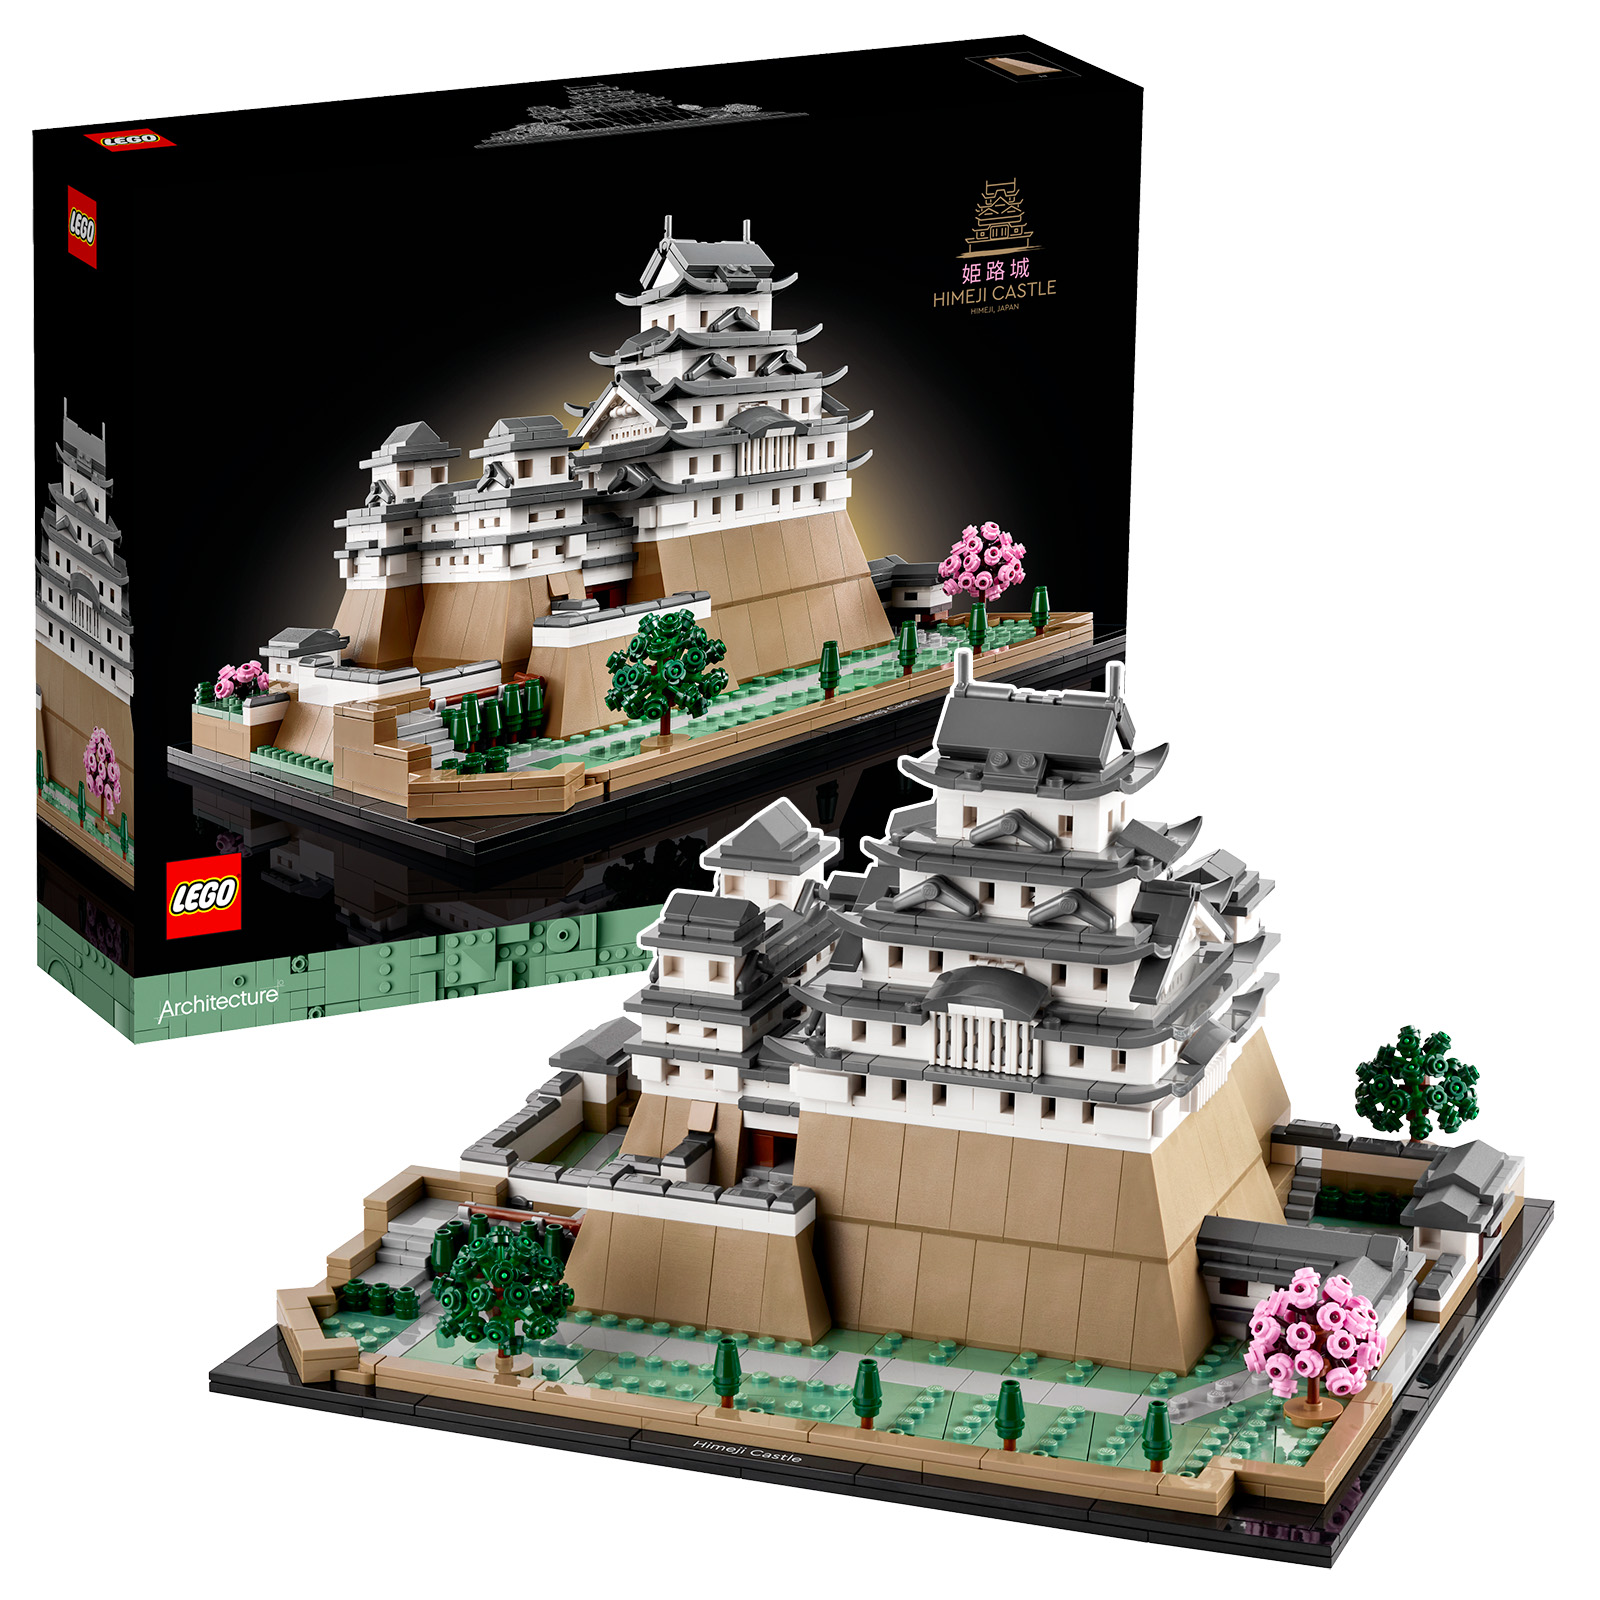 ▻ LEGO Architecture 21060 Himeji Castle : Le set est en ligne sur